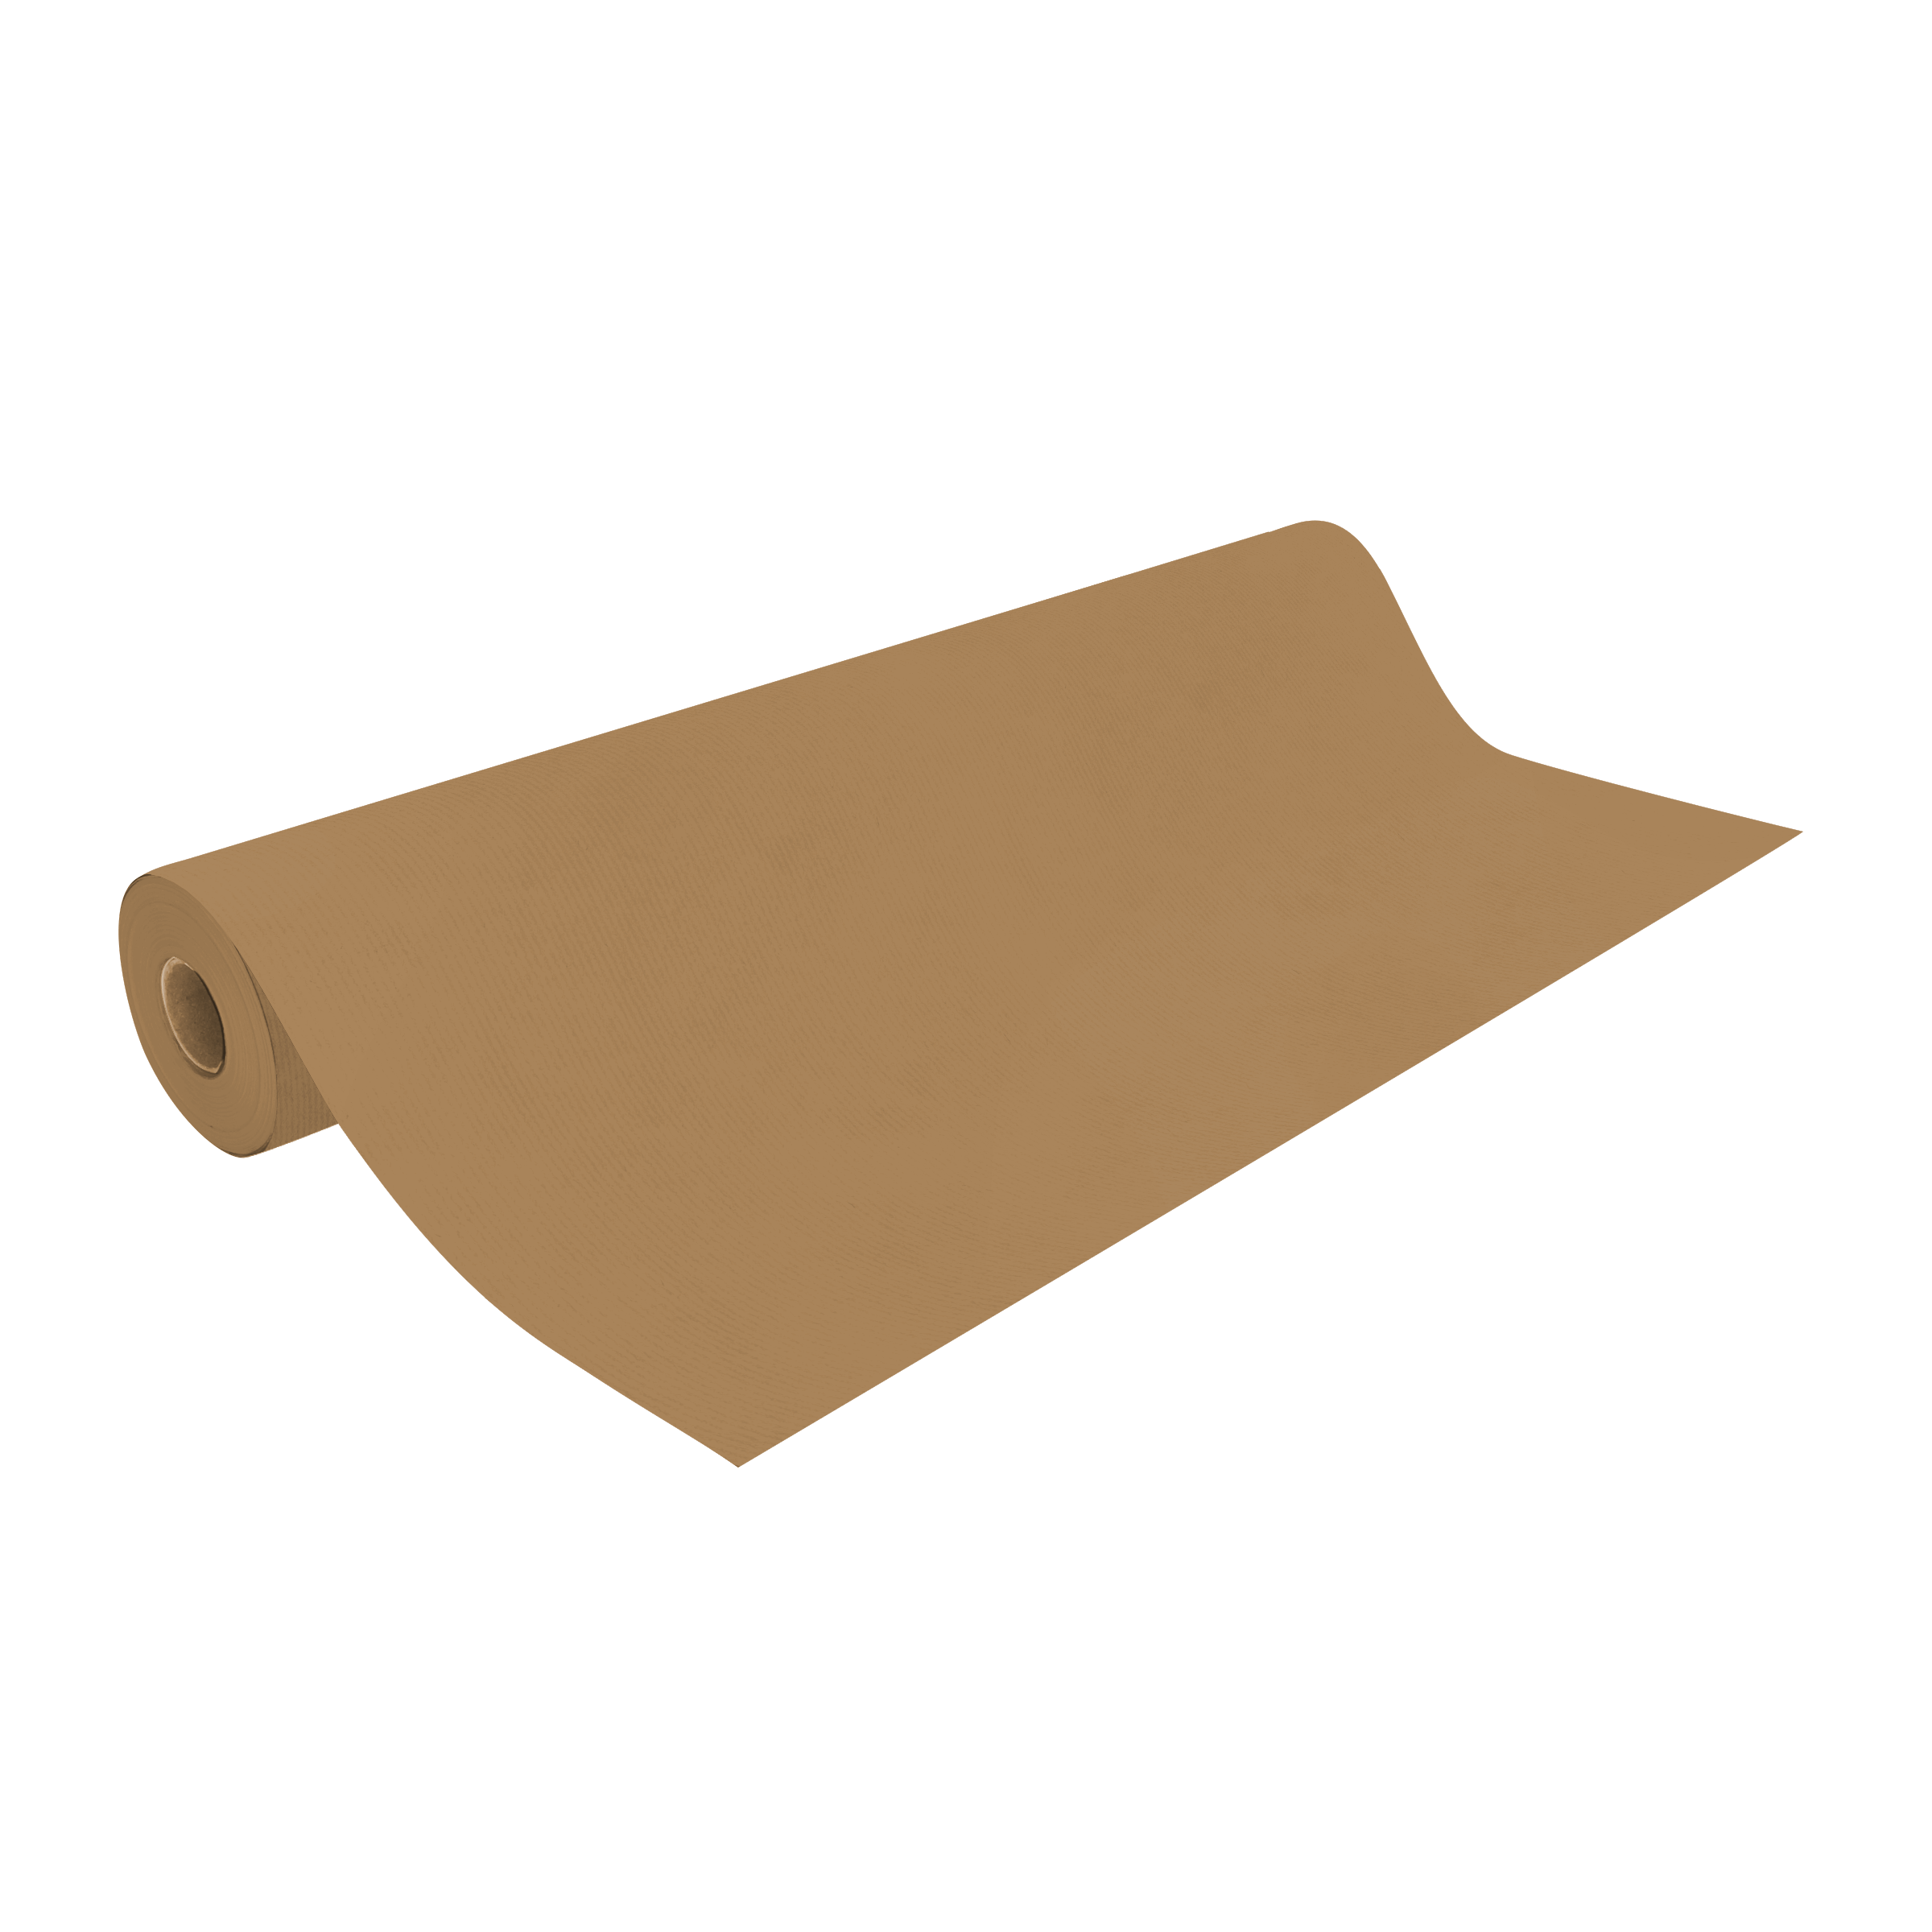 DittaDisplay Rouleau papier kraft naturel brun 60gr 0.7x100m Brown natural kraft paper roll Braune natürliche Kraftpapierrolle